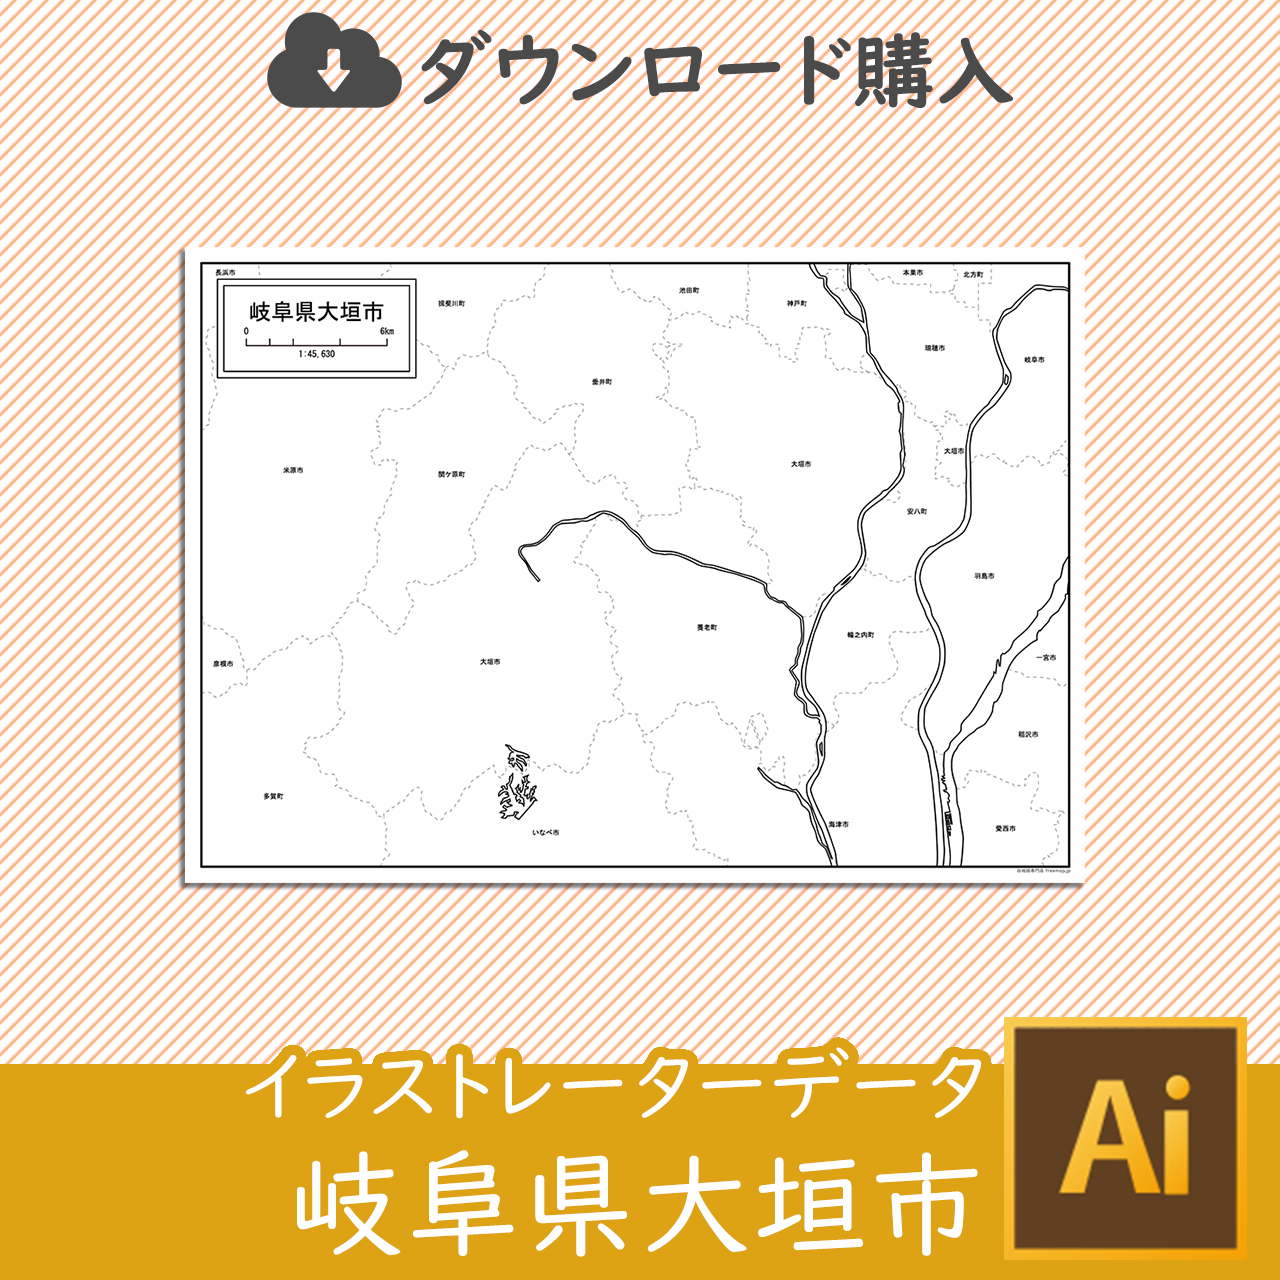 大垣市のaiデータのサムネイル画像